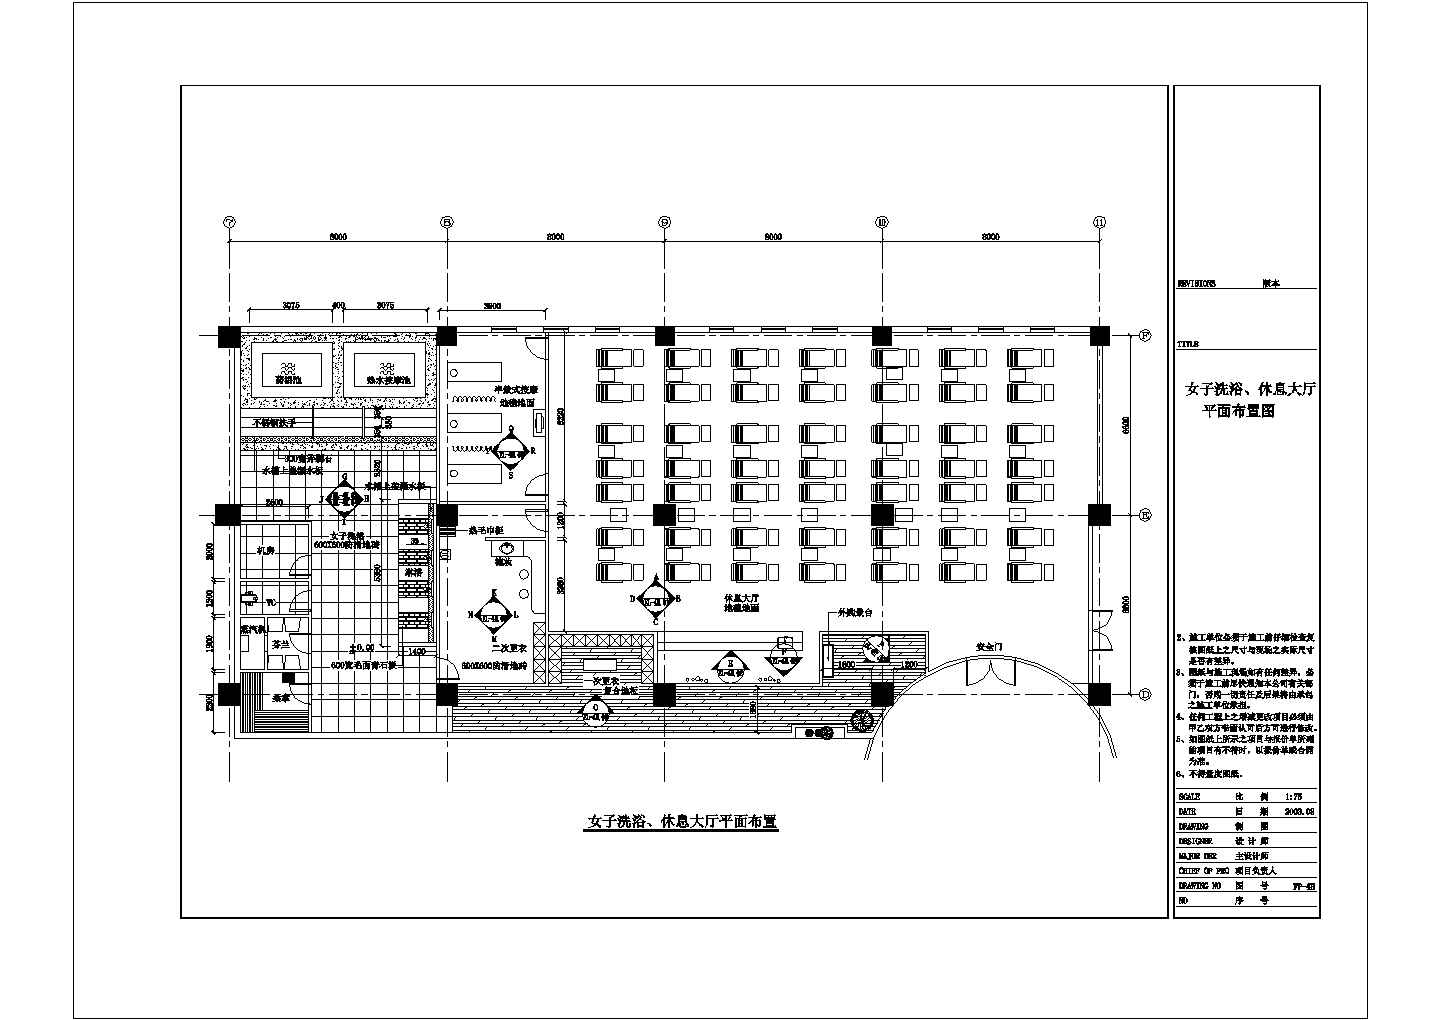 河北省某某新建星级国际酒店桑拿中心cad装修设计施工图